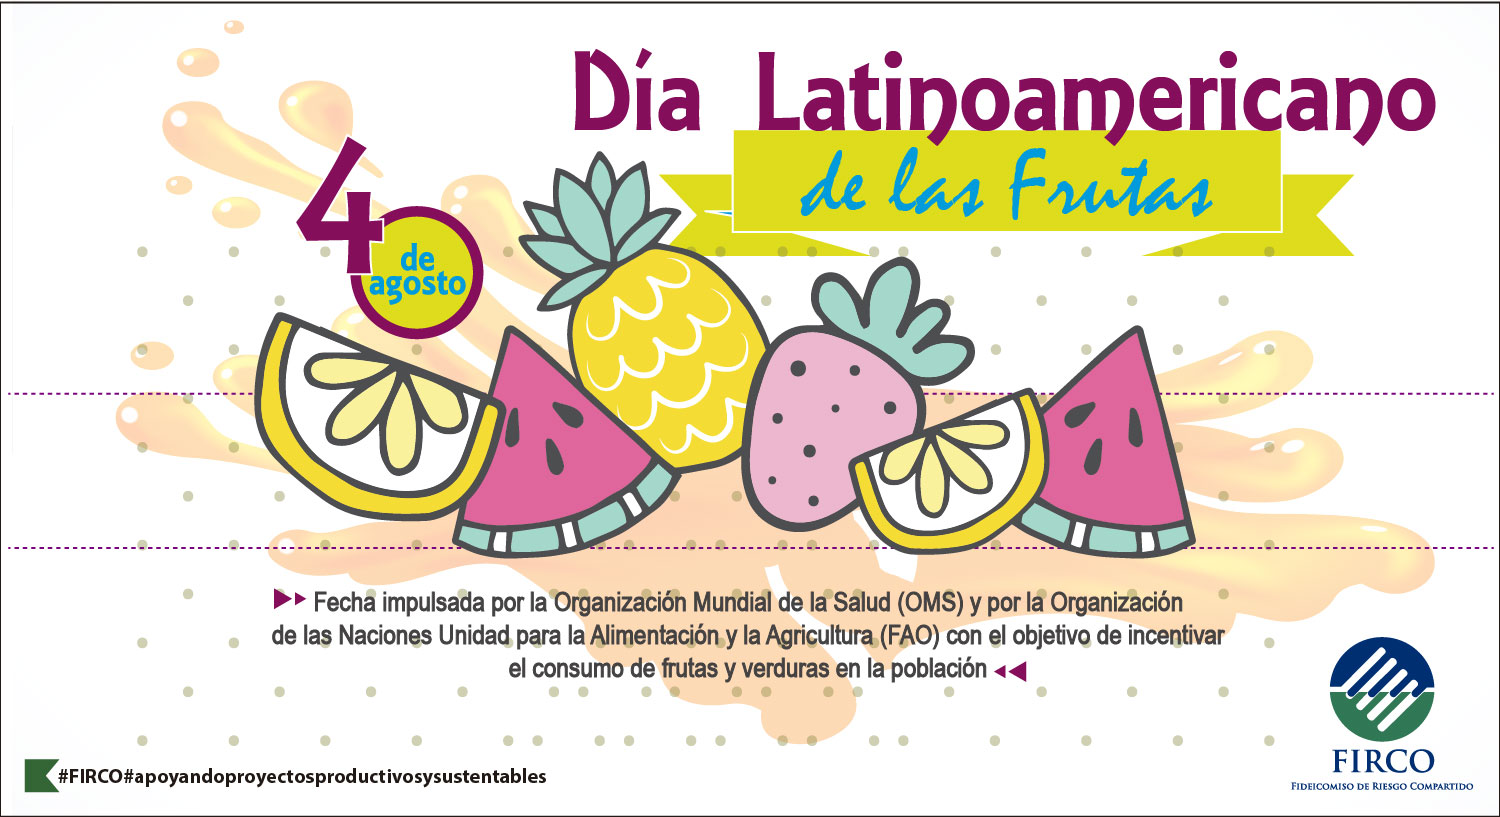 Día Latinoamericano de las Frutas